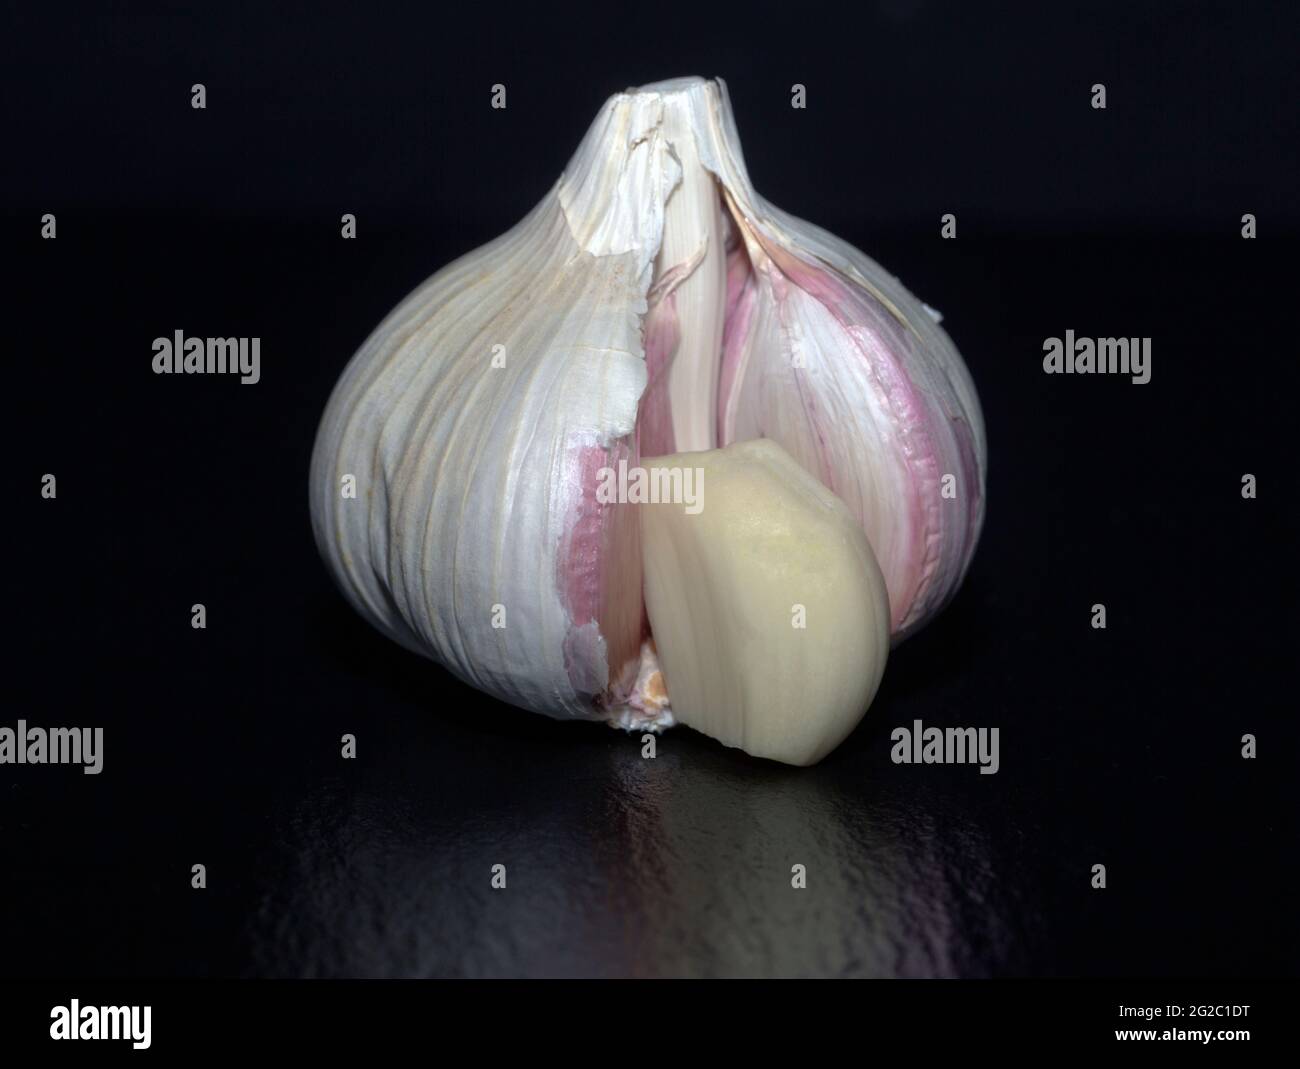 Pink garlic Stock Photo